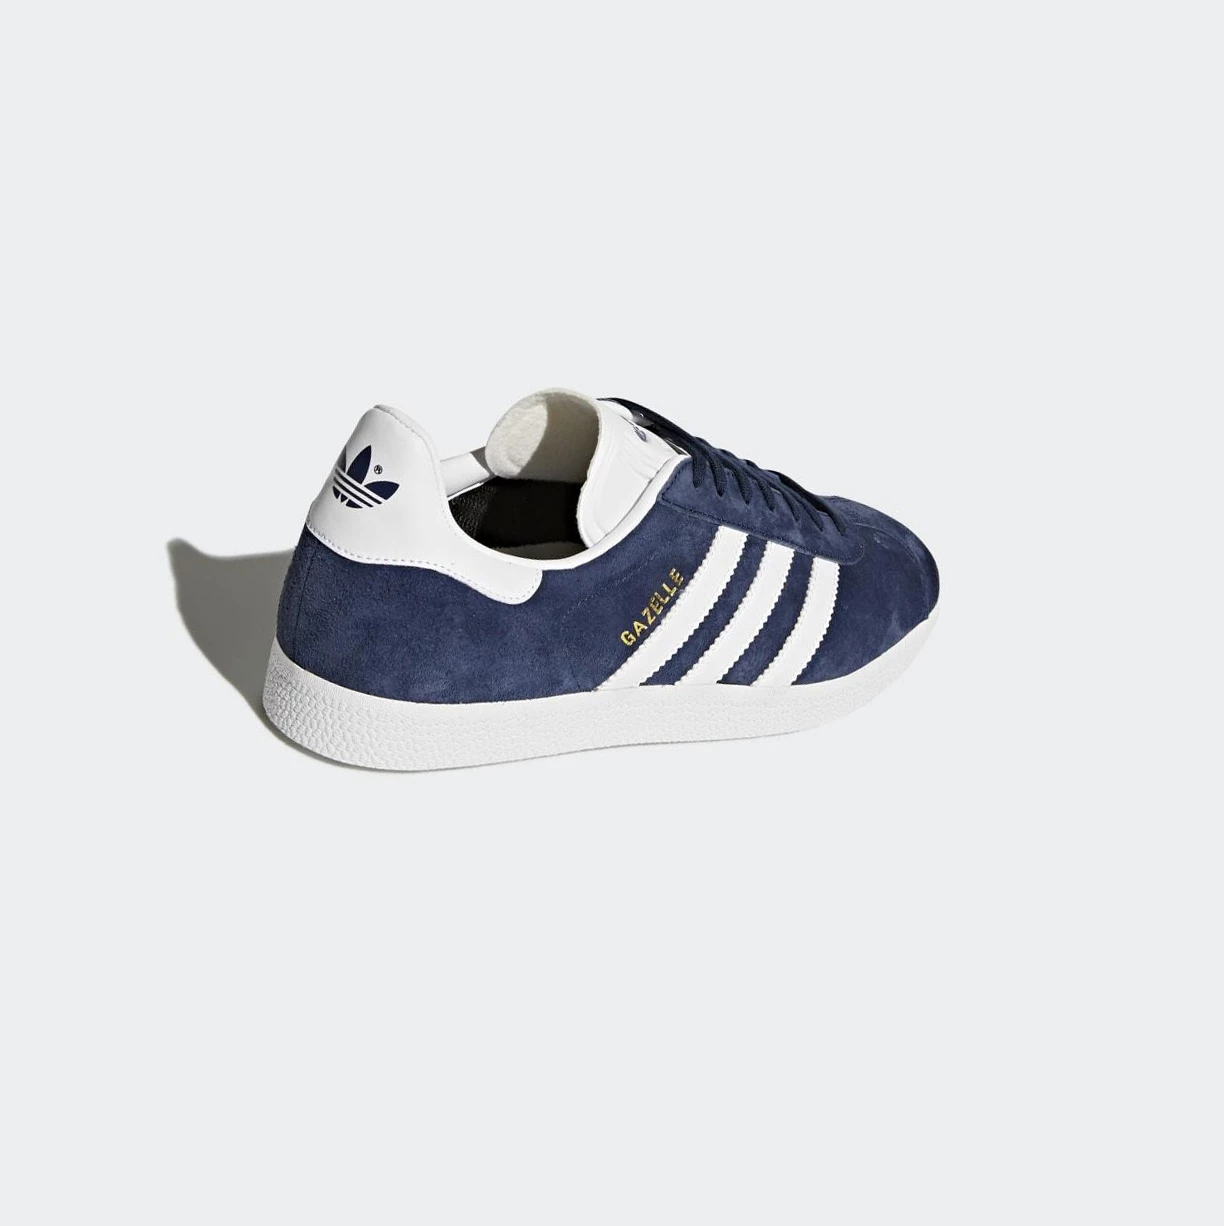 Originálne Topánky Adidas Gazelle Damske Modre | 697SKVCDIGJ